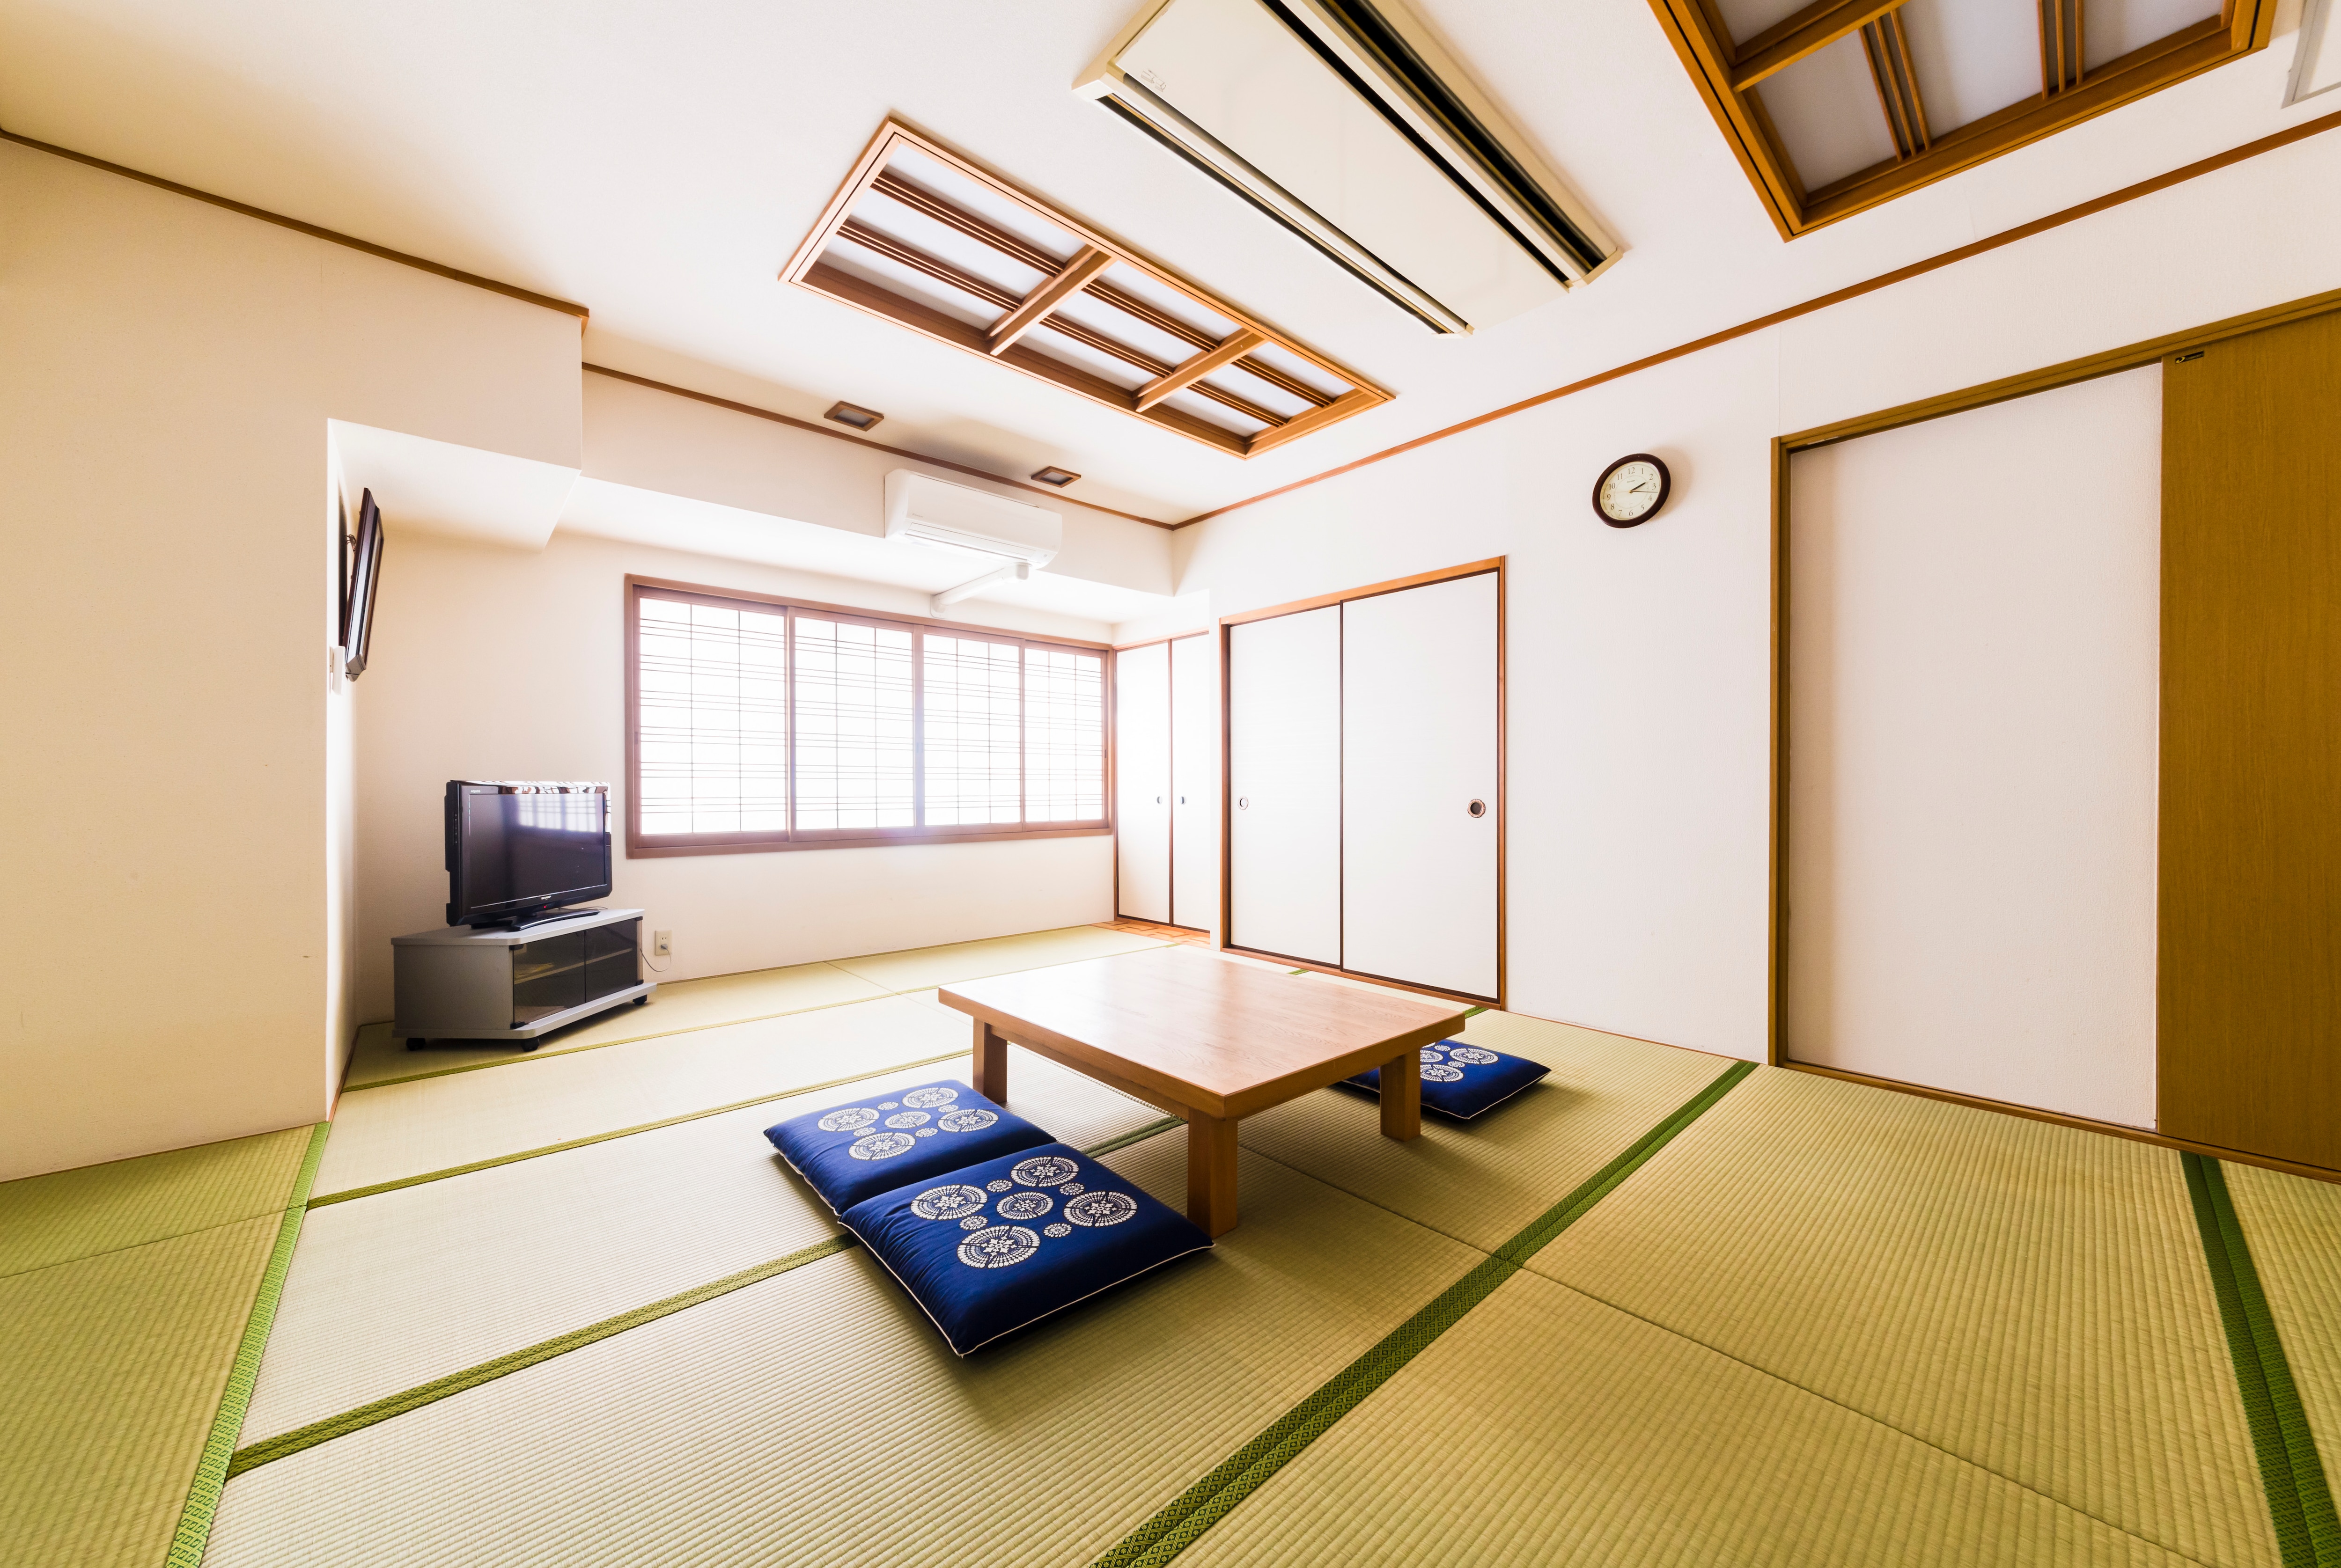 일본식 방 14 다다미 2분~7분 숙박 가능합니다 넓고 해방감이 있는 방에서 편히 쉴 수 있습니다